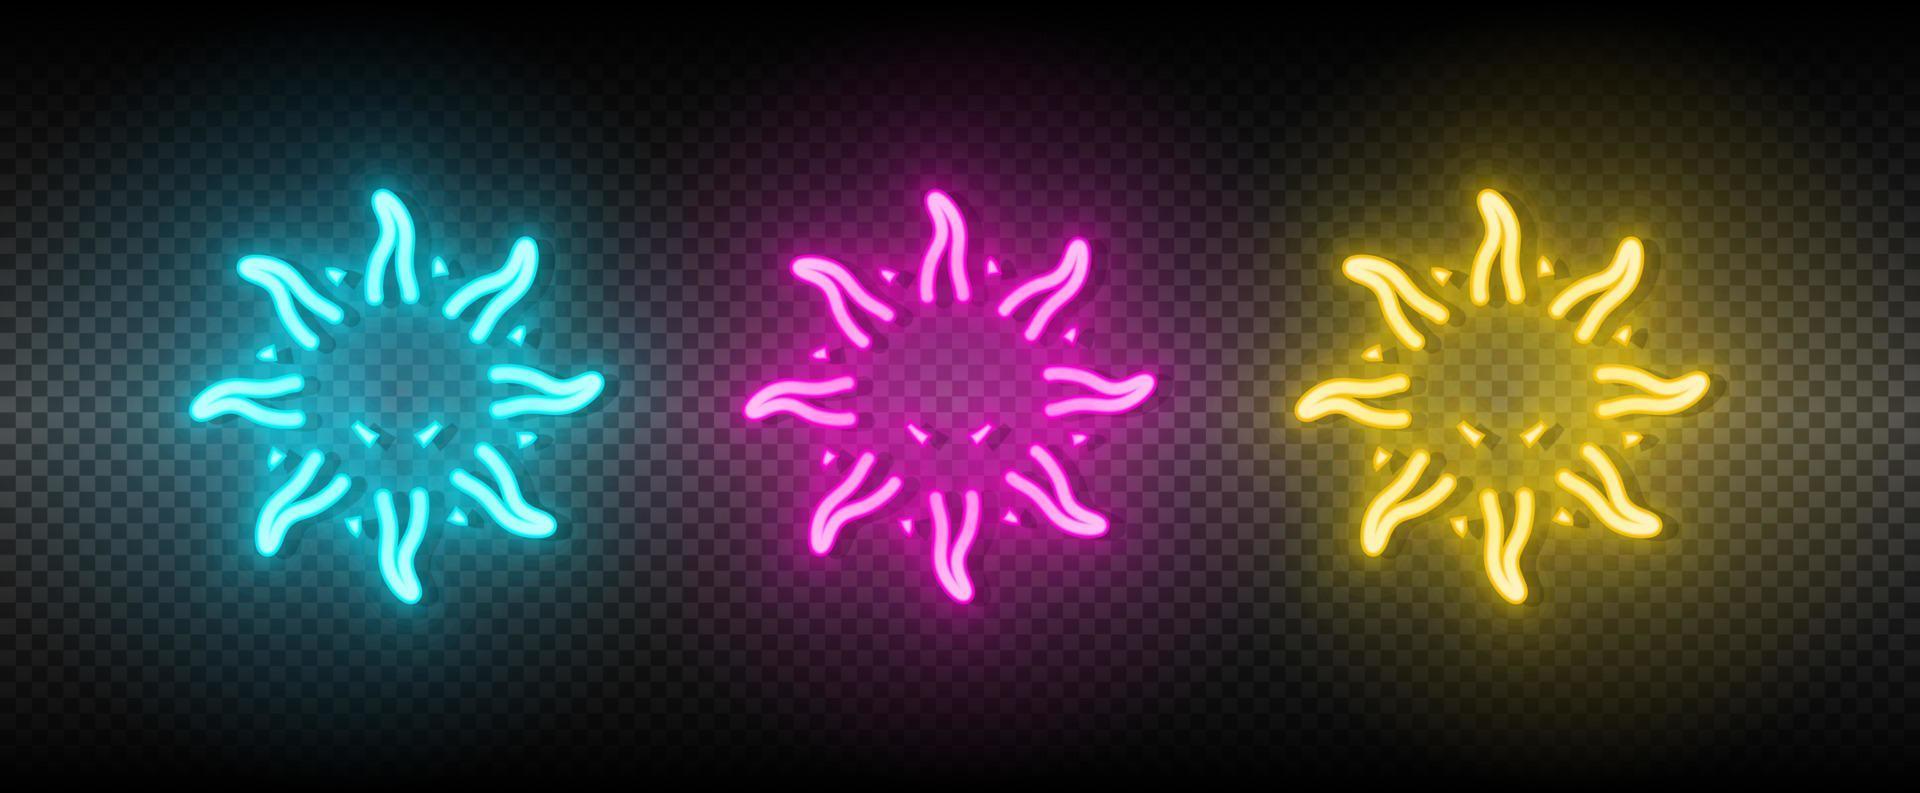 Sonne Blau, Rosa und Gelb Neon- Vektor Symbol Satz.